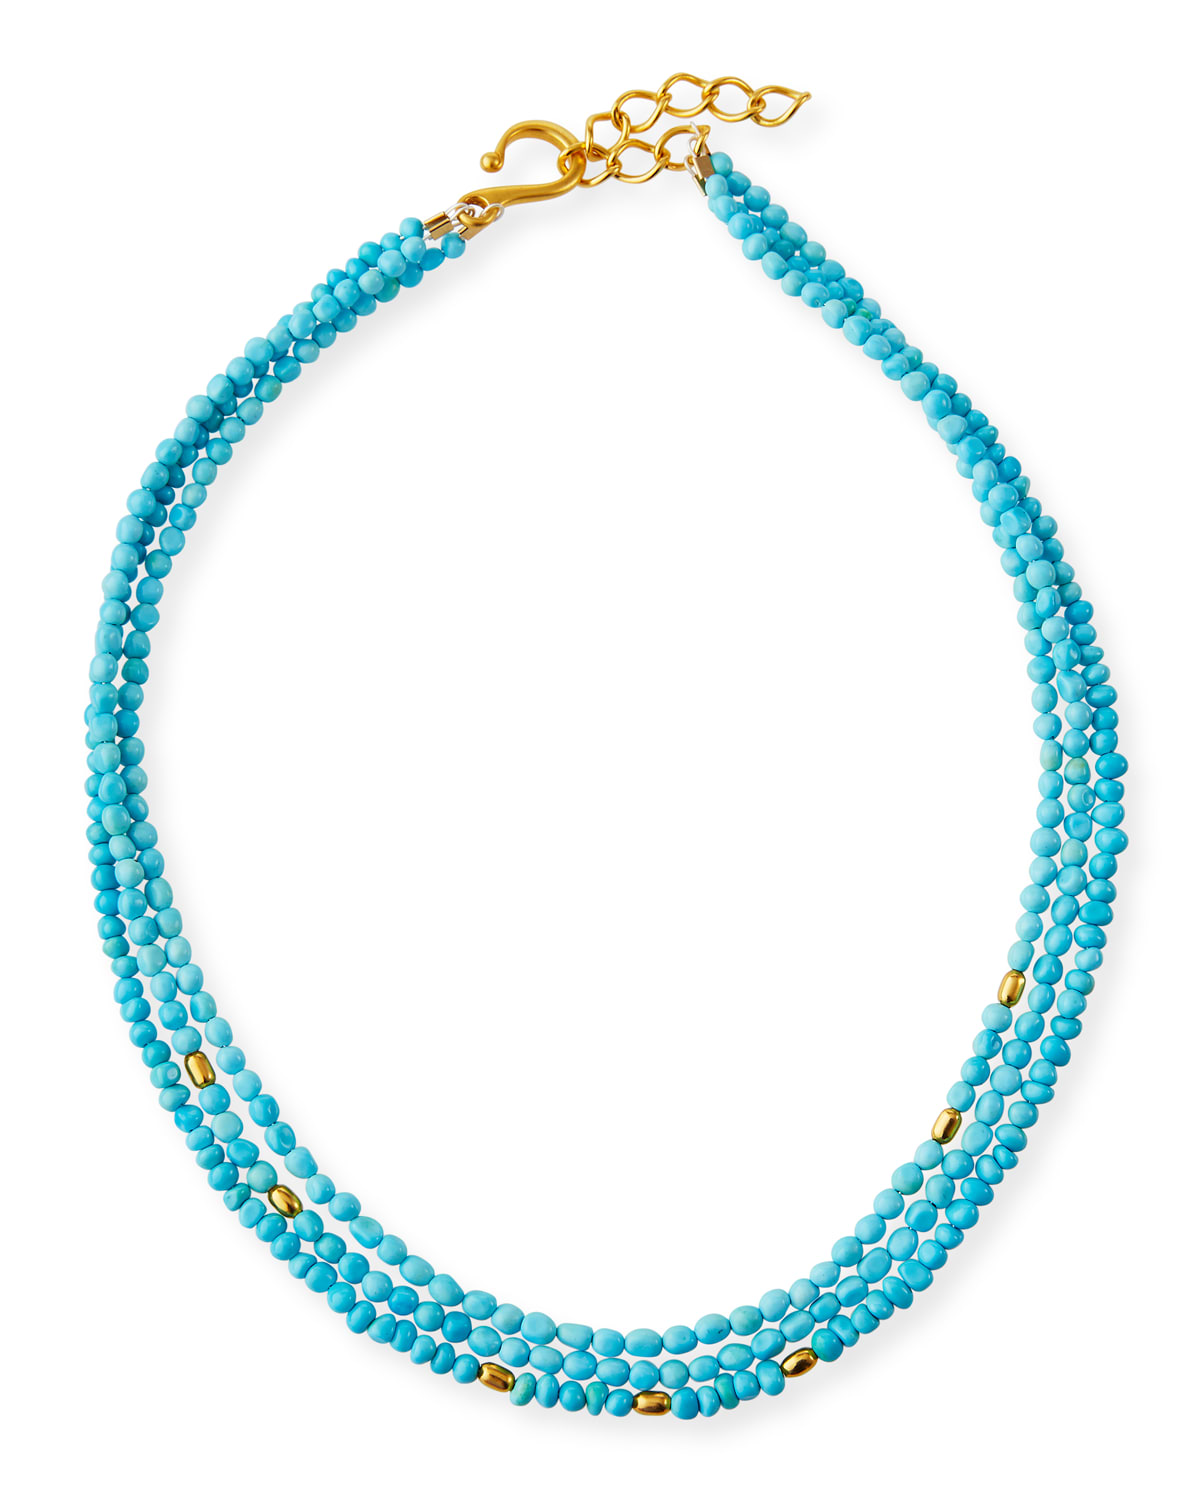 Dina Mackney 3-strand Turquoise Necklace